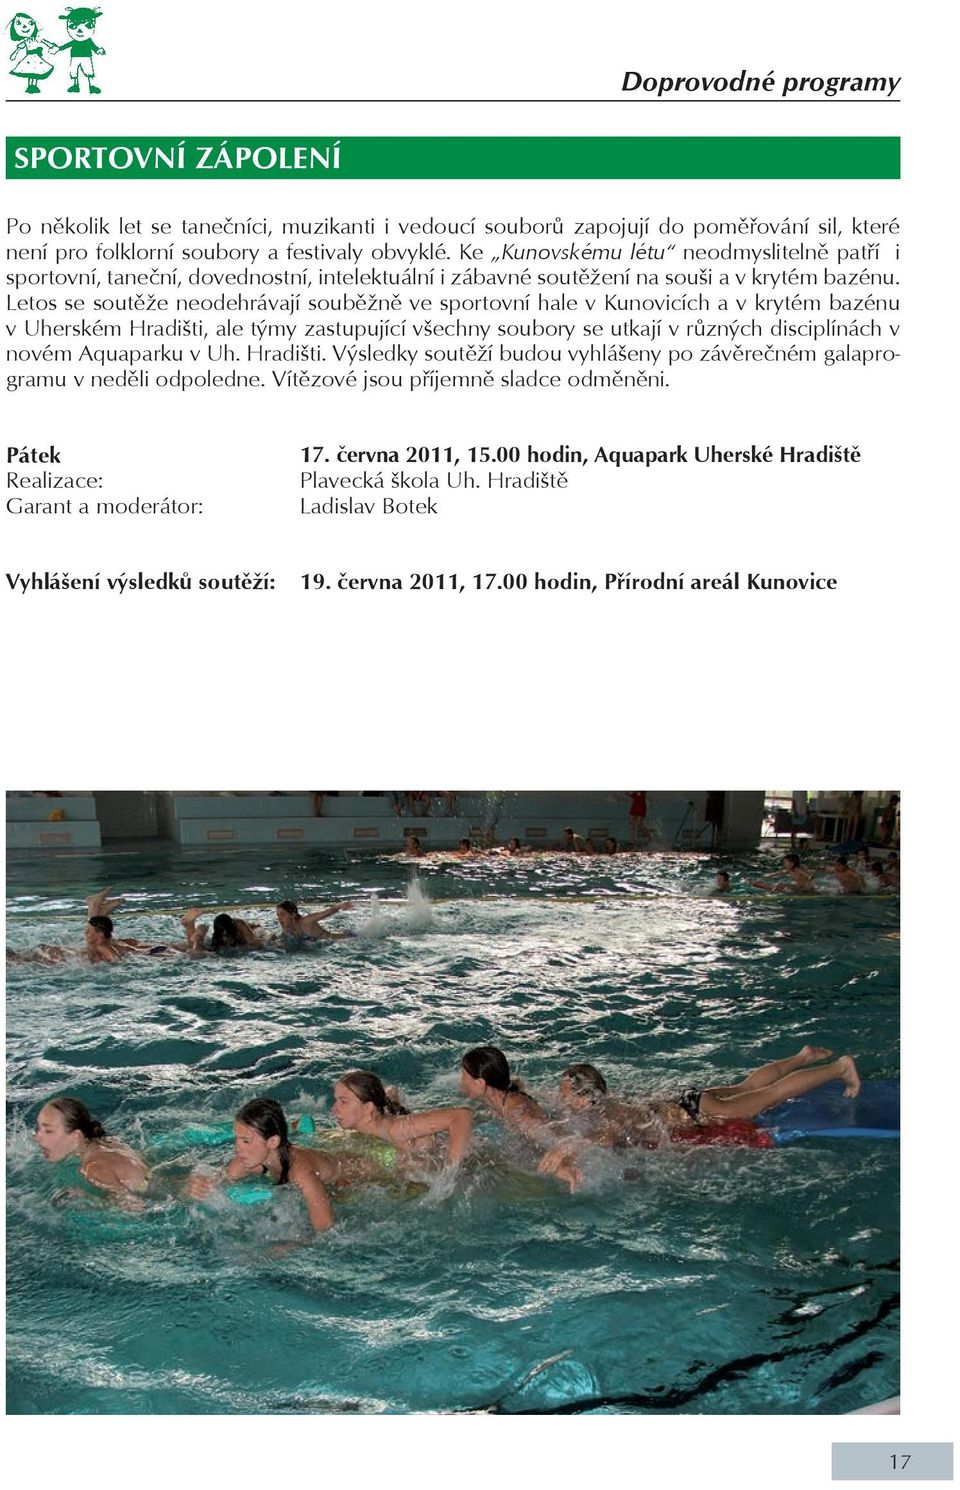 Letos se soutěže neodehrávají souběžně ve sportovní hale v Kunovicích a v krytém bazénu v Uherském Hradišti, ale týmy zastupující všechny soubory se utkají v různých disciplínách v novém Aquaparku v